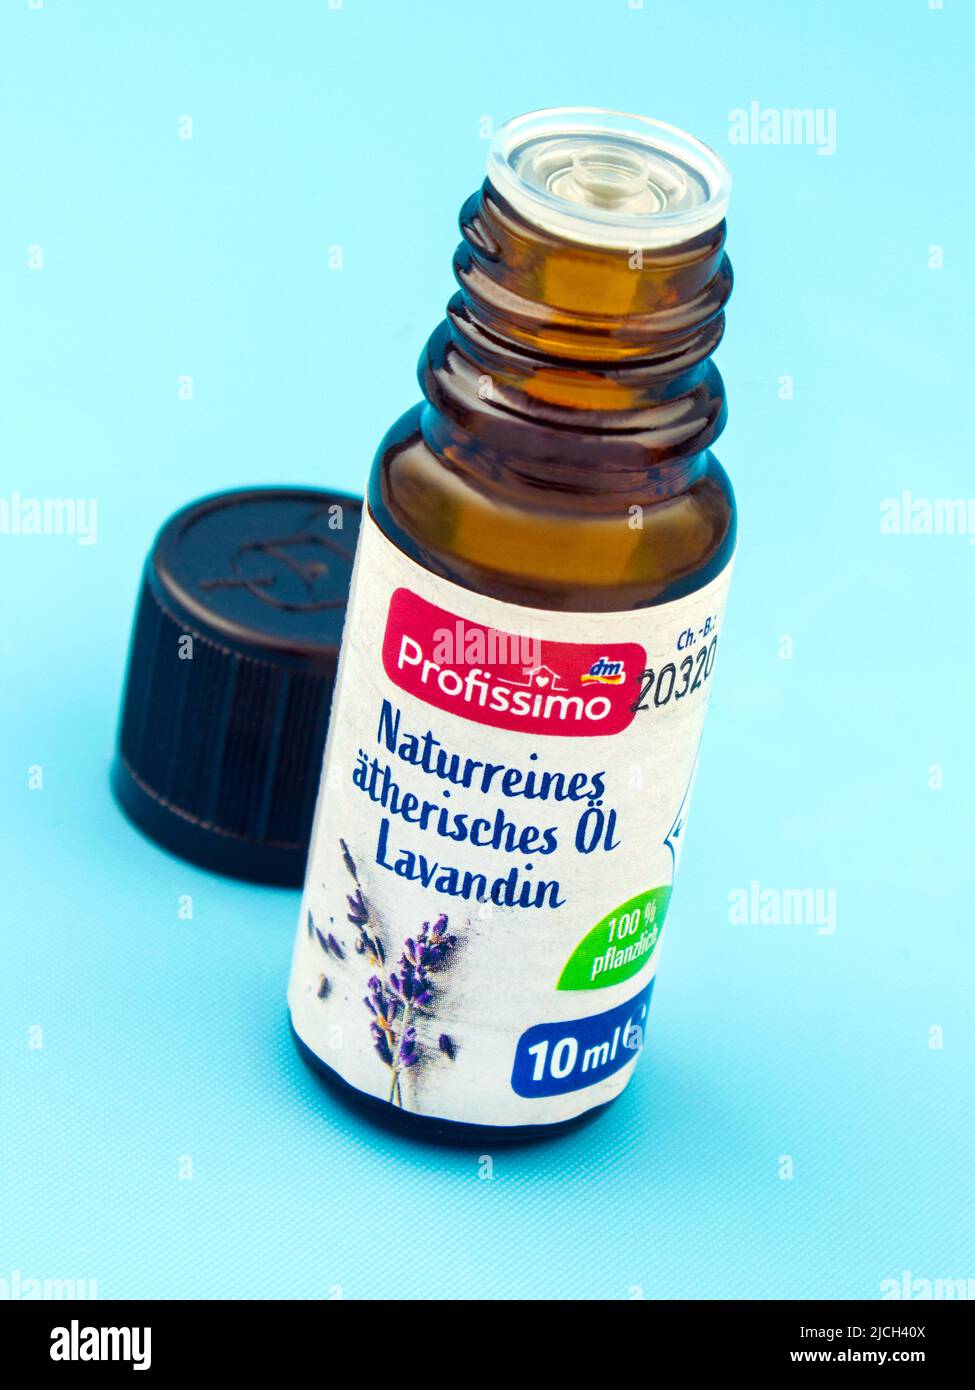 Lavendelöl von Profissimo naturreines ätherisches Öl Lavandin auf blauem Hintergrund Stock Photo